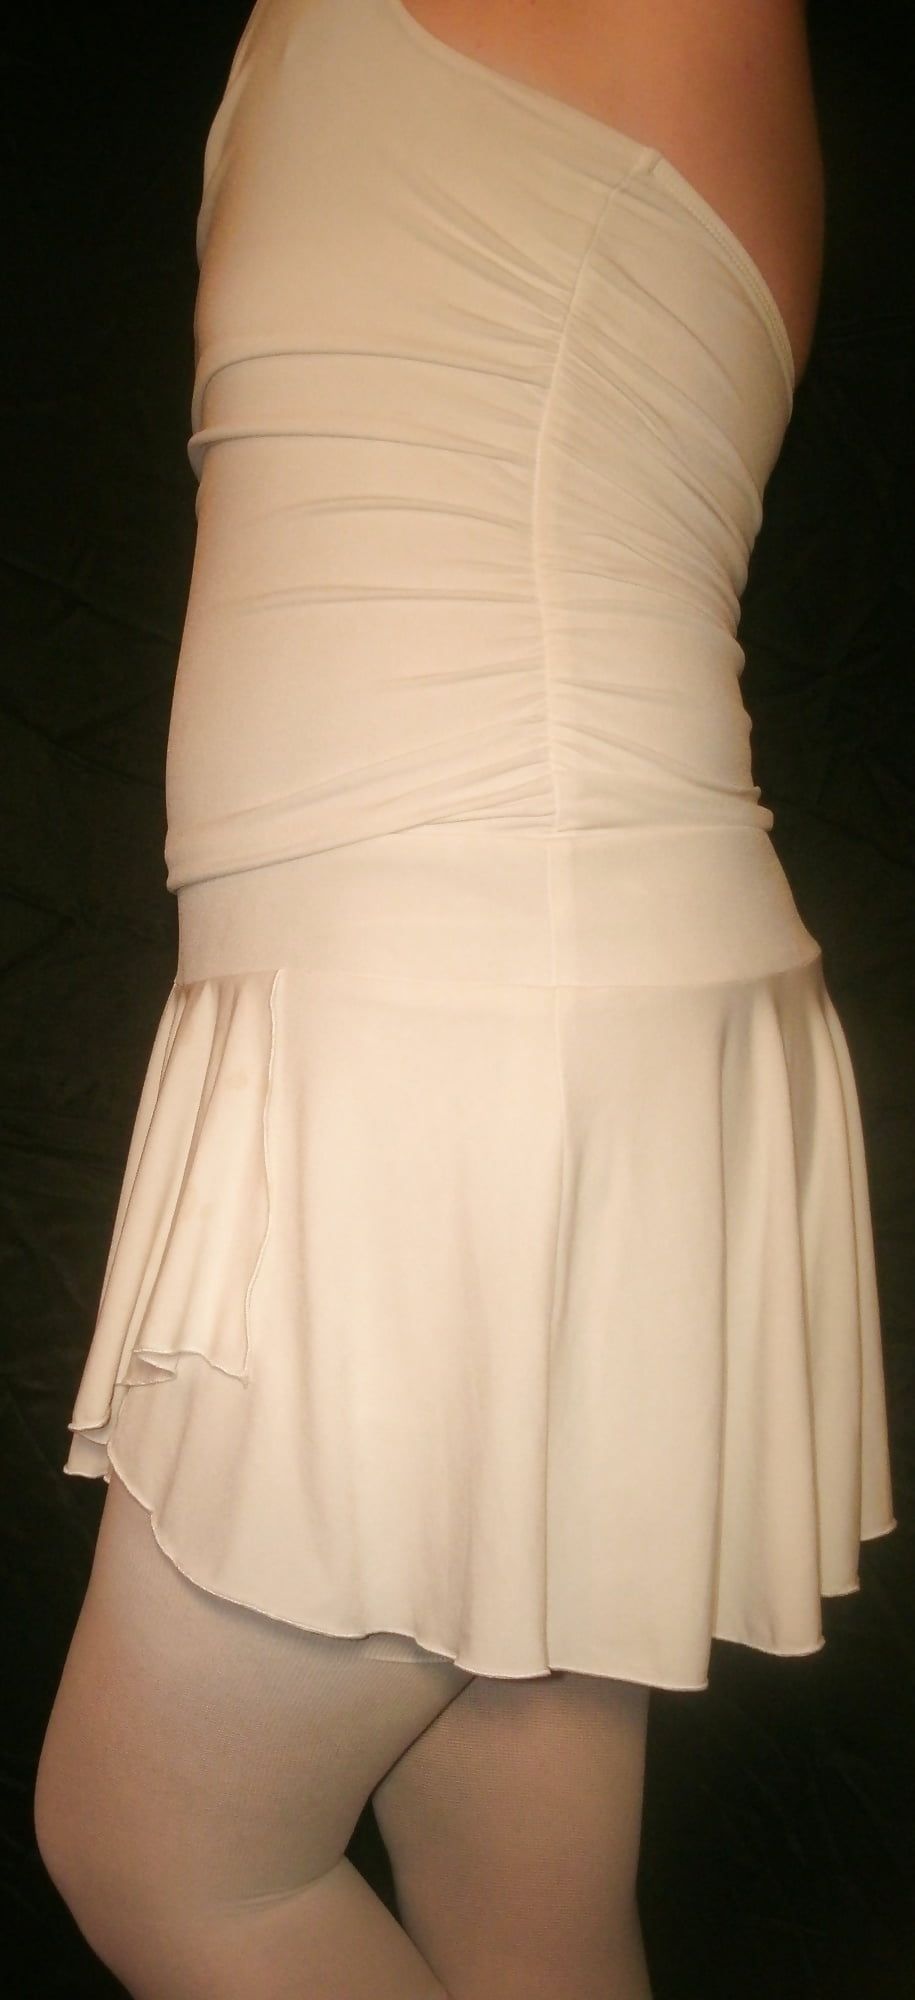 Sissy Boy Lovelaska - My new white dress #5